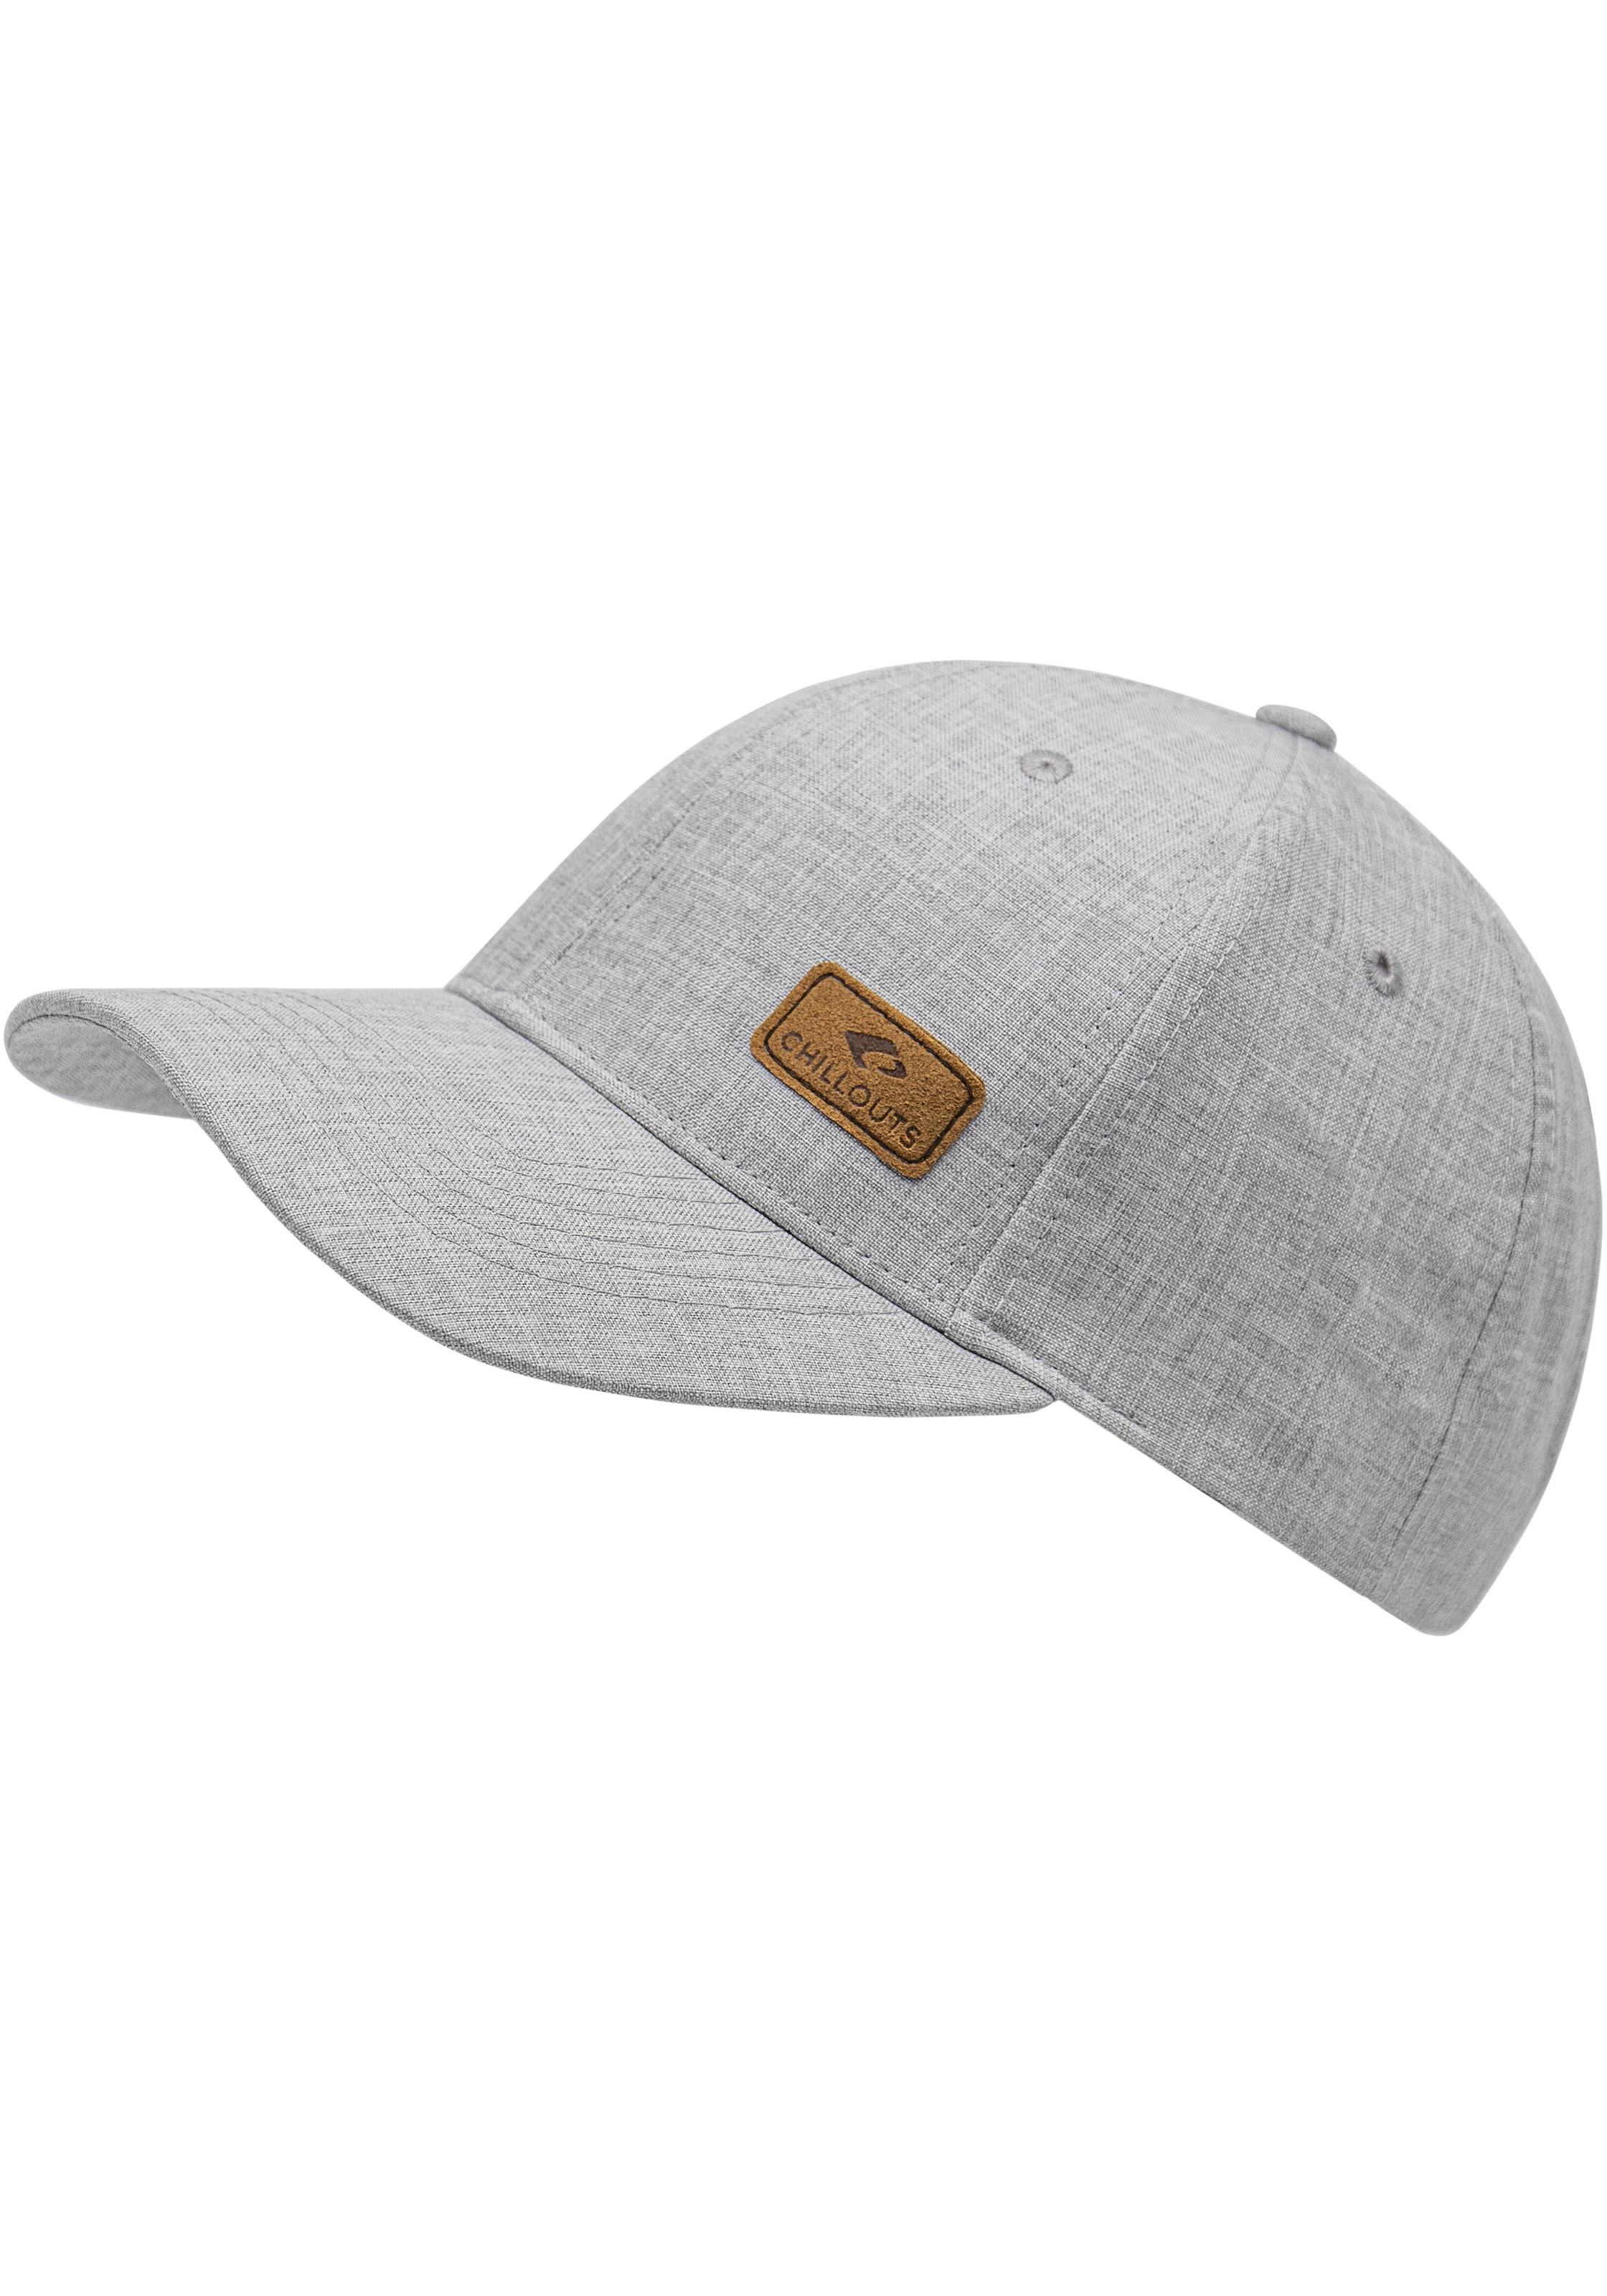 chillouts Baseball Cap, Amadora Hat in melierter Optik, One Size,  verstellbar im OTTO Online Shop kaufen | OTTO